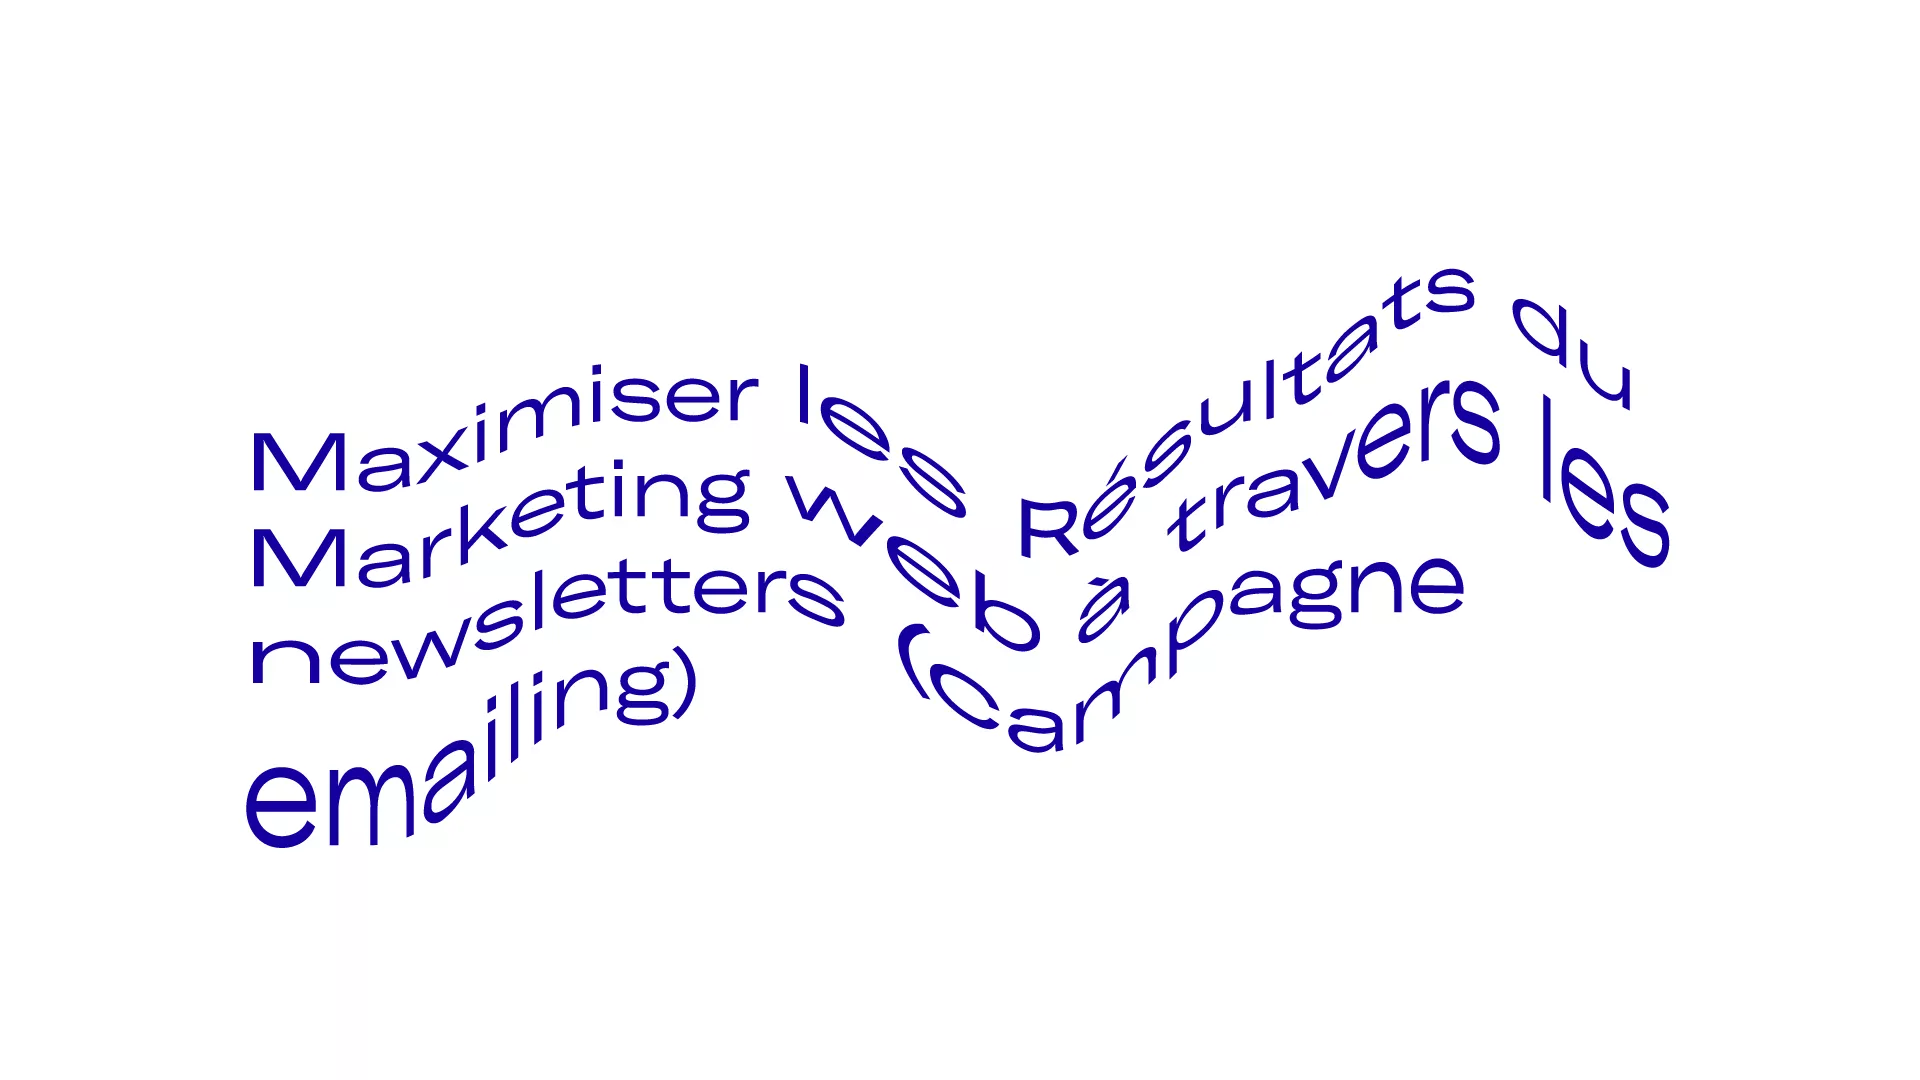 Maximiser les Résultats du Marketing web à travers les newsletters (campagne emailing) 